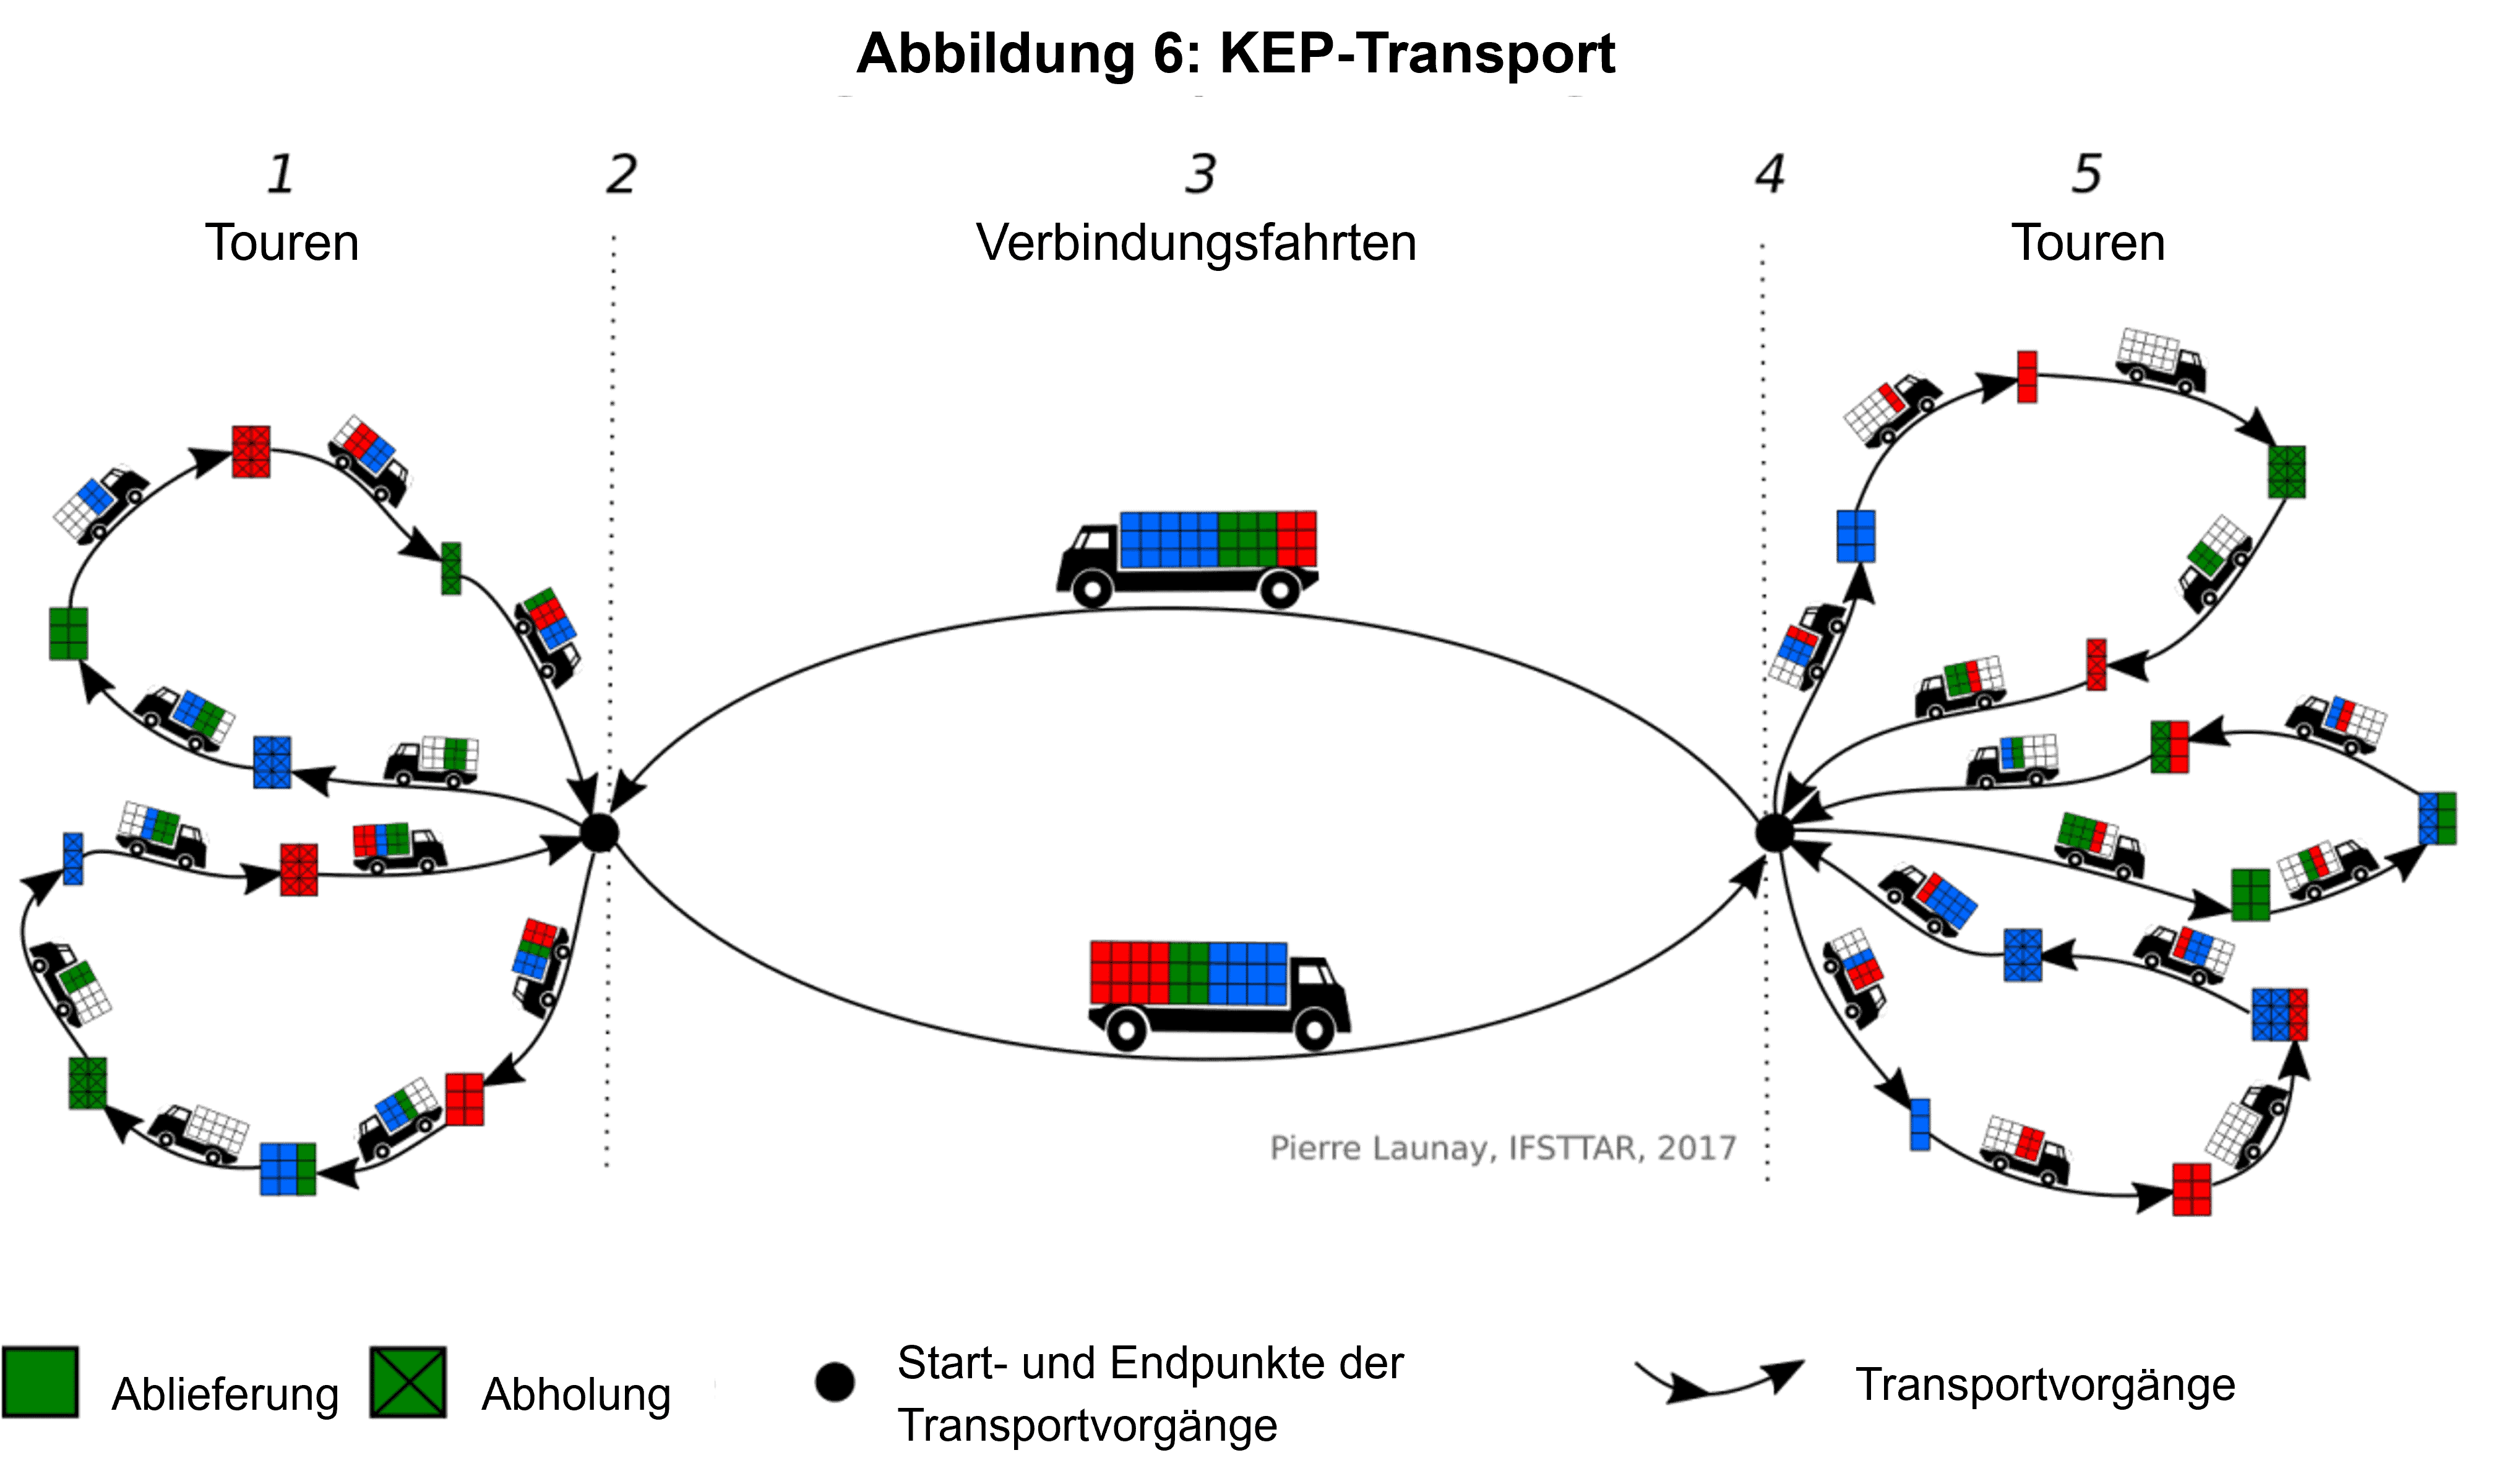 Wie gelingt die effiziente Organisation von Transportnetzen für KEP-Dienste?